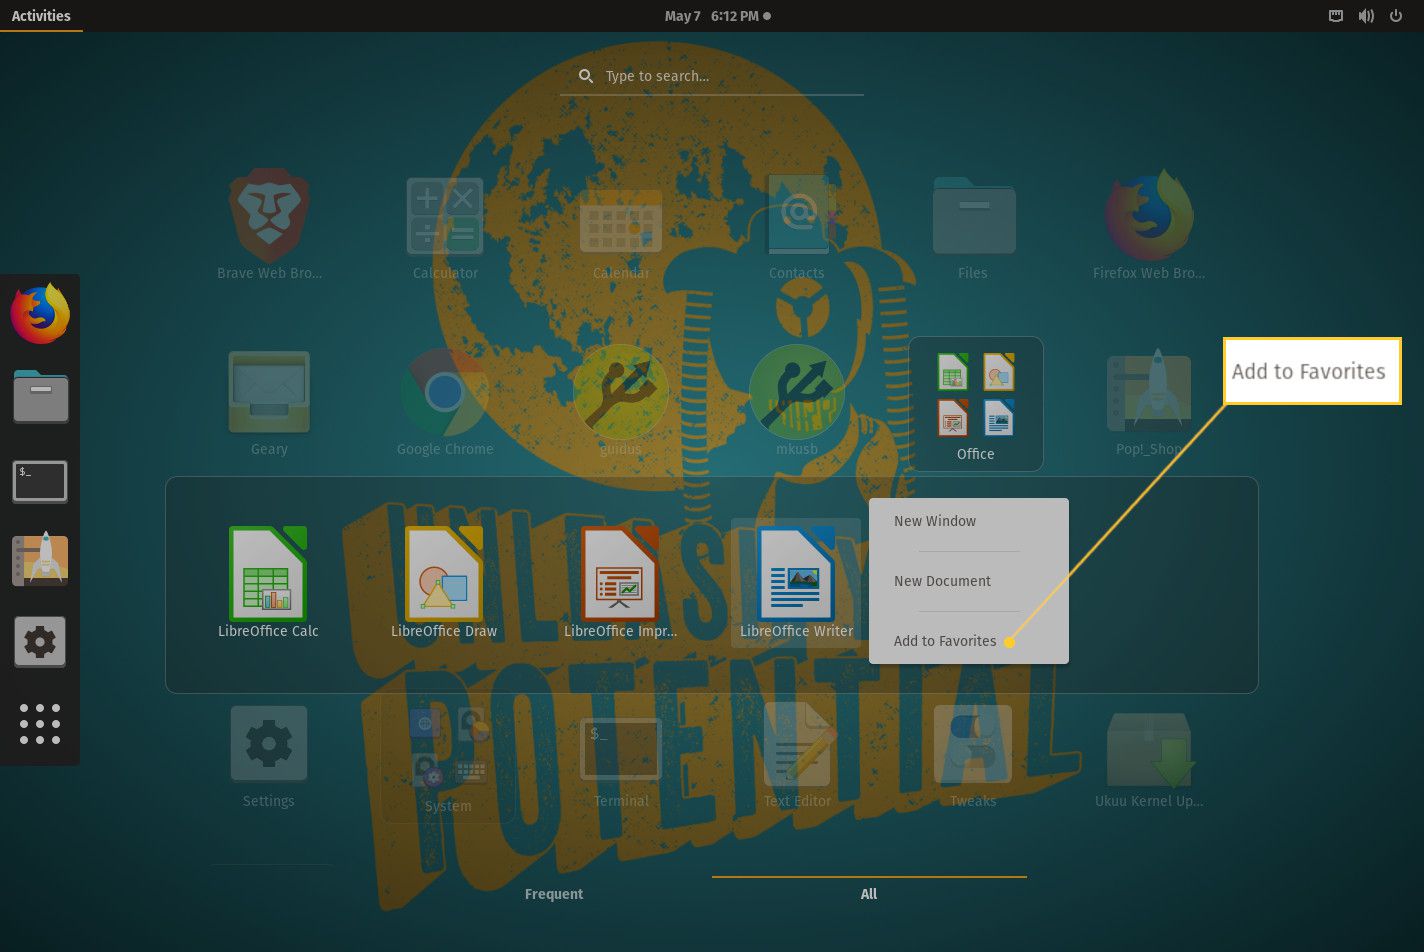 GNOME op bureaubladscherm met LibreOffice Writer als favoriet